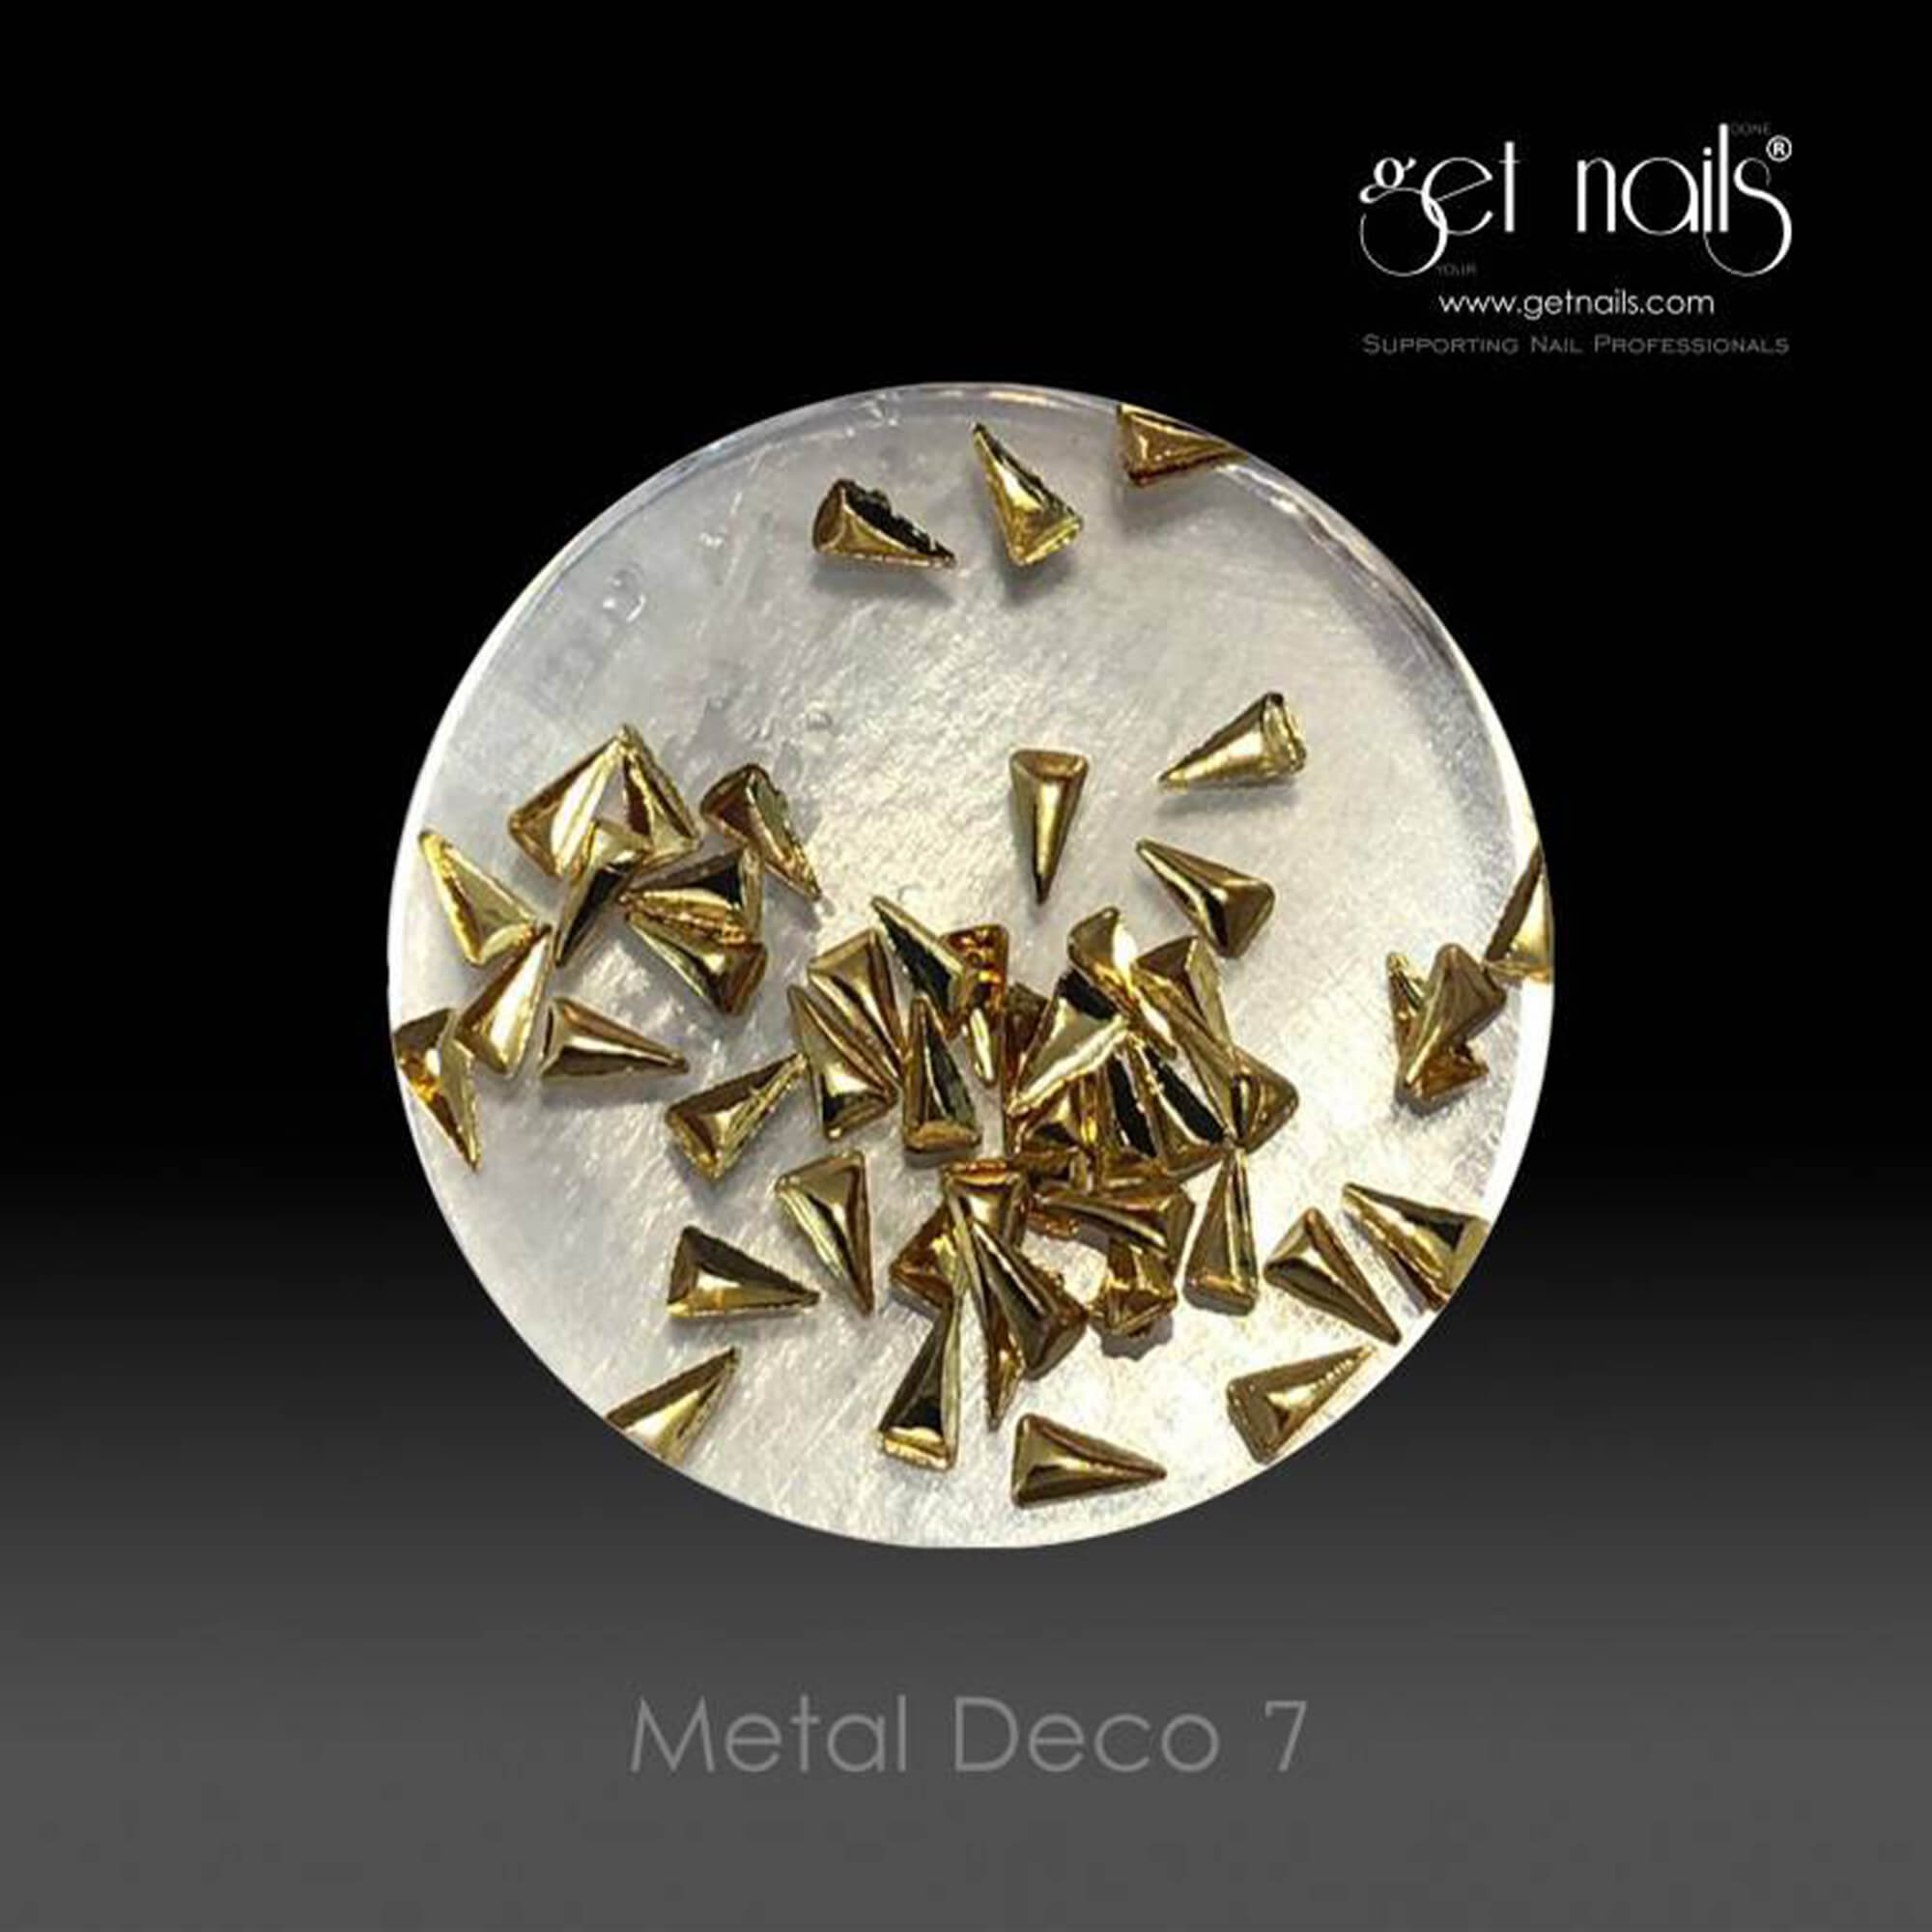 Get Nails Austria - Metal Deco 7 Gold, 50 pcs